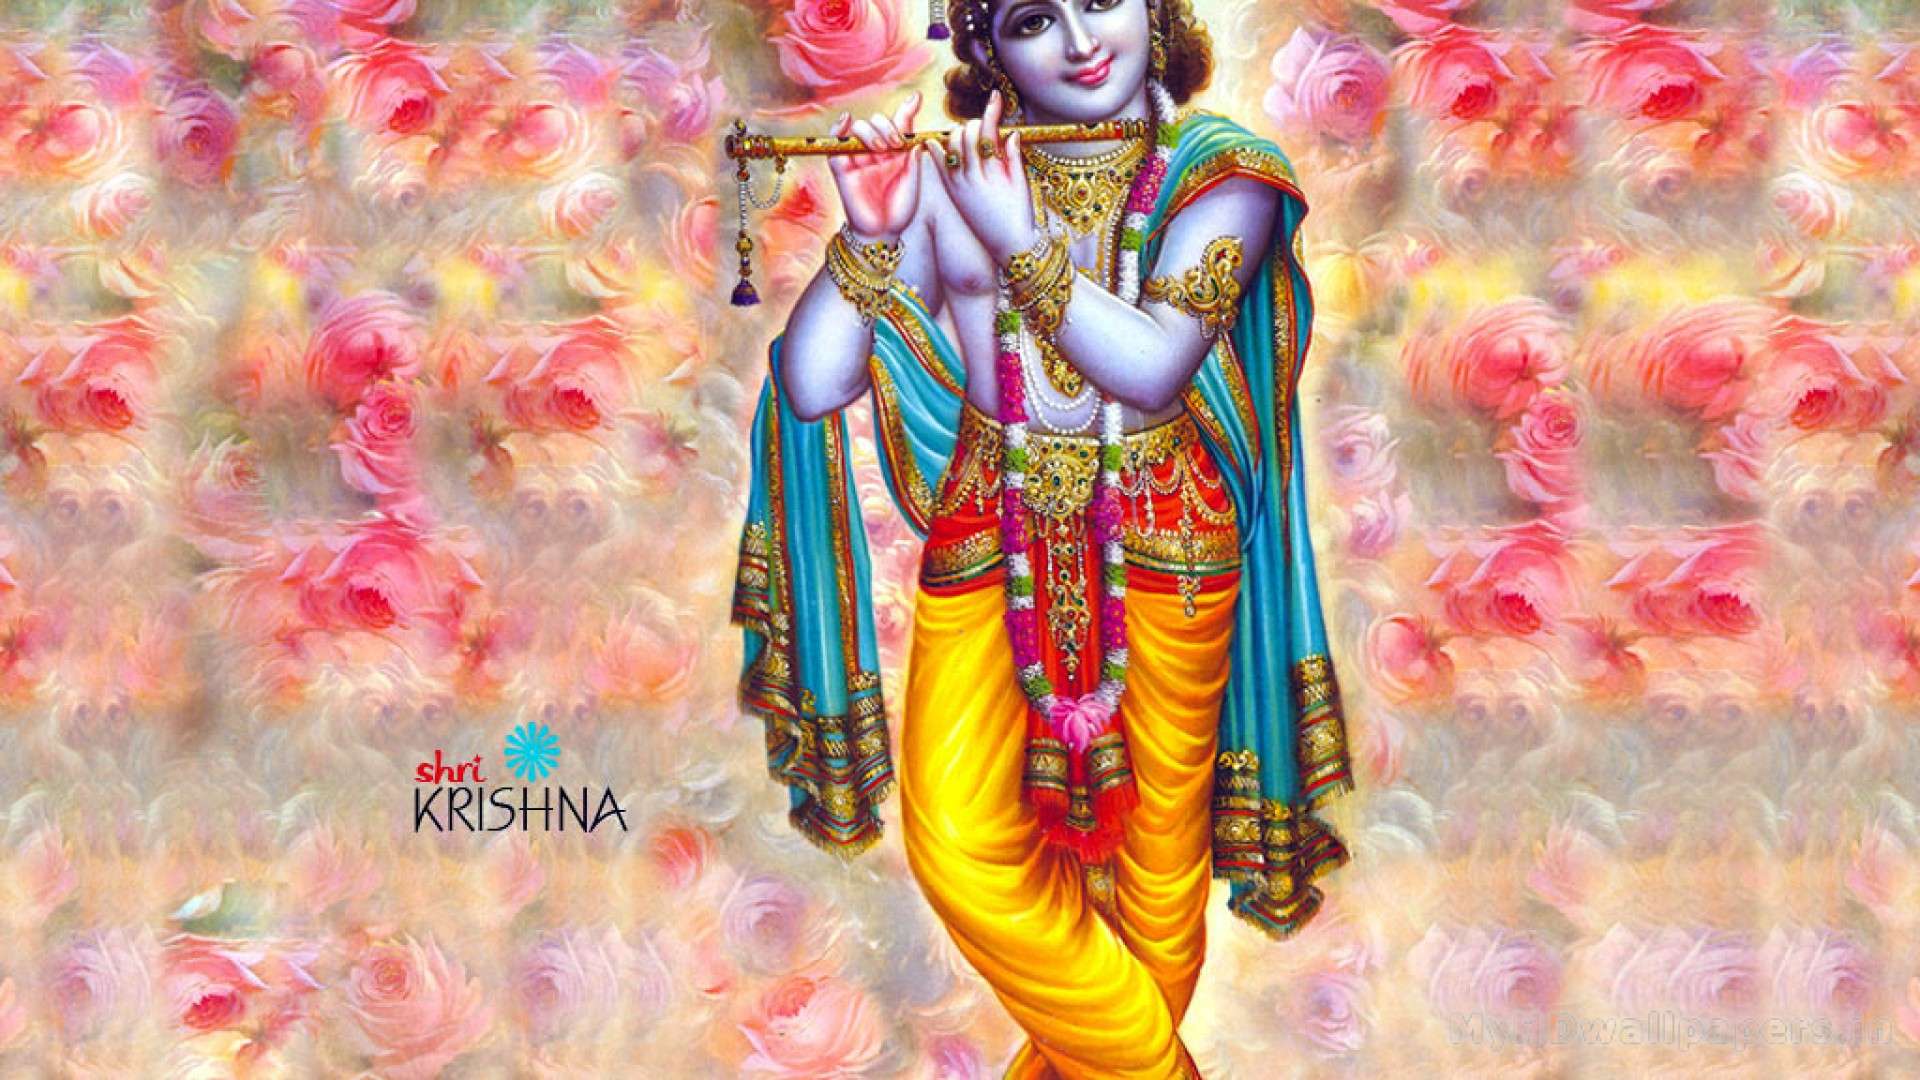 Shri Krishna Wallpaper Hd Download - 1920x1080 Wallpaper 